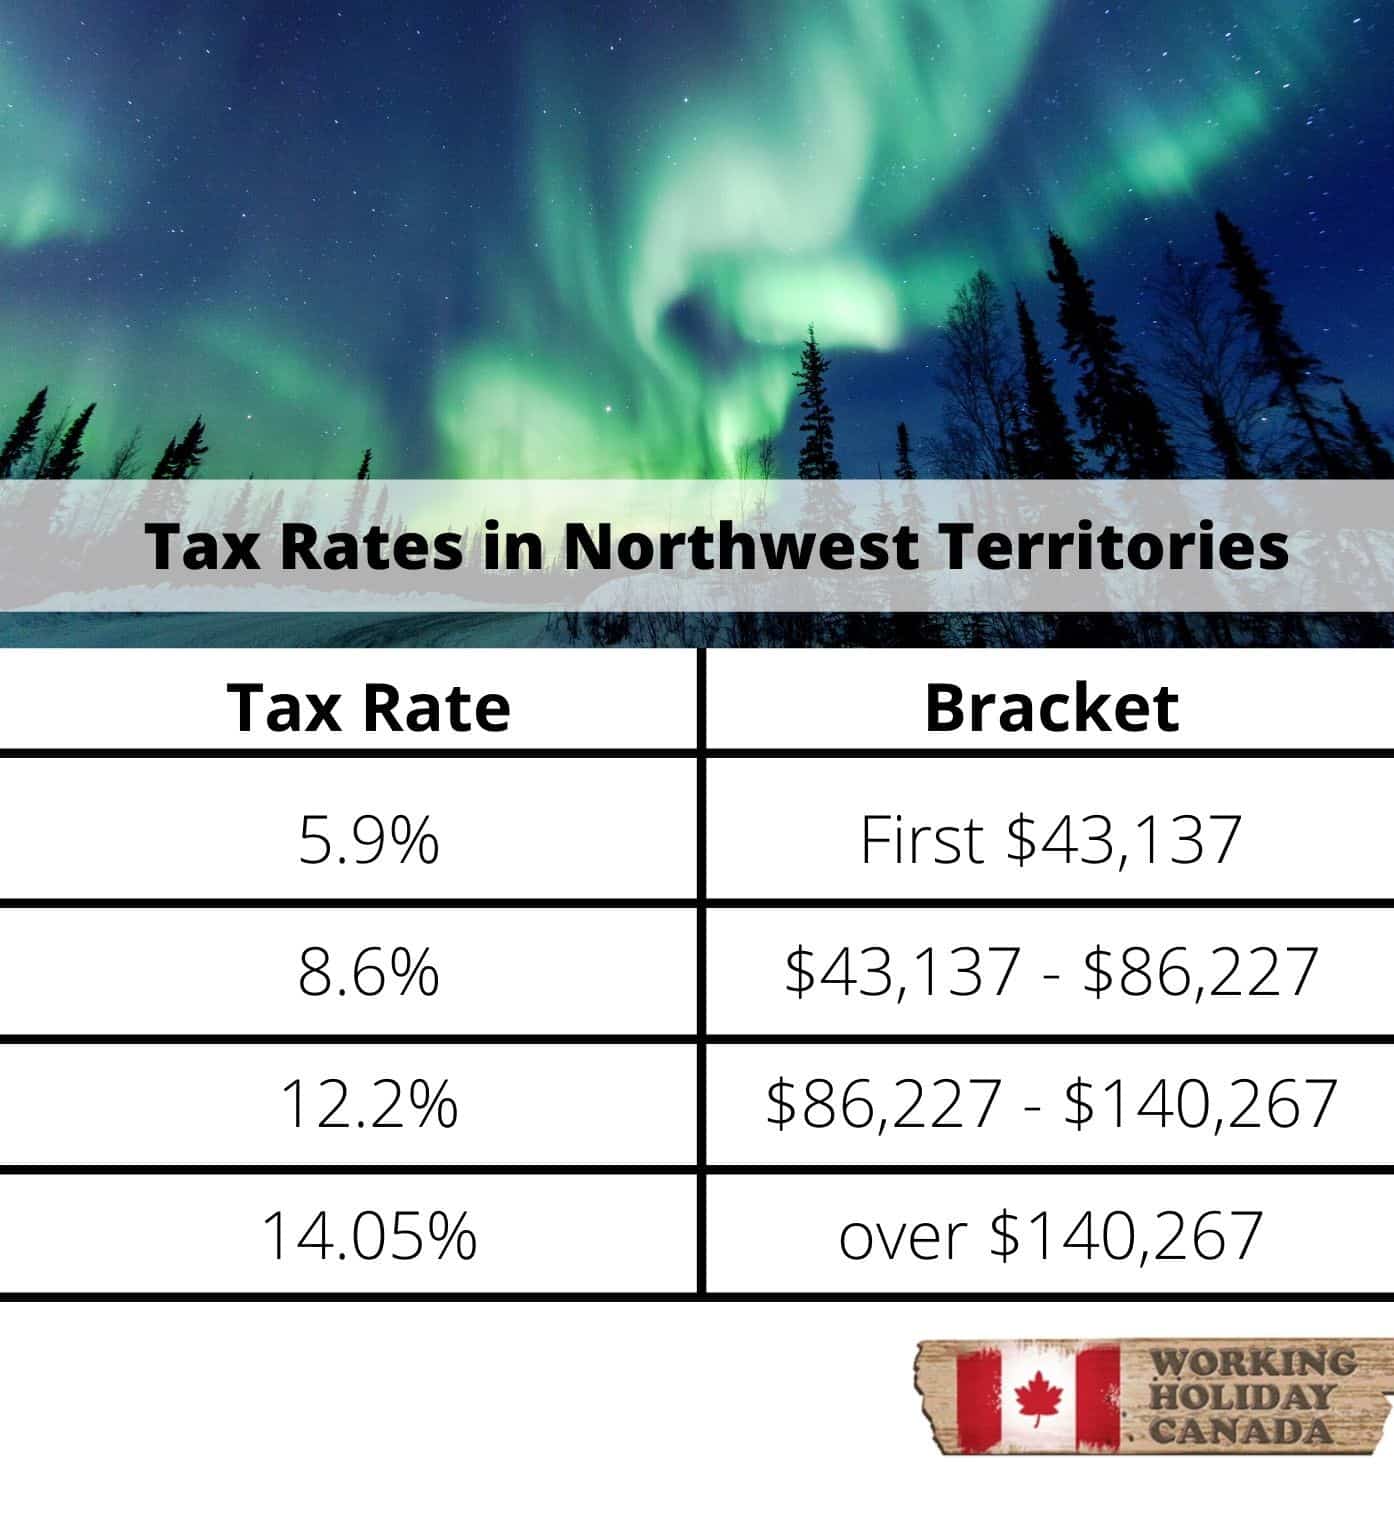 Northwest territories tax rates